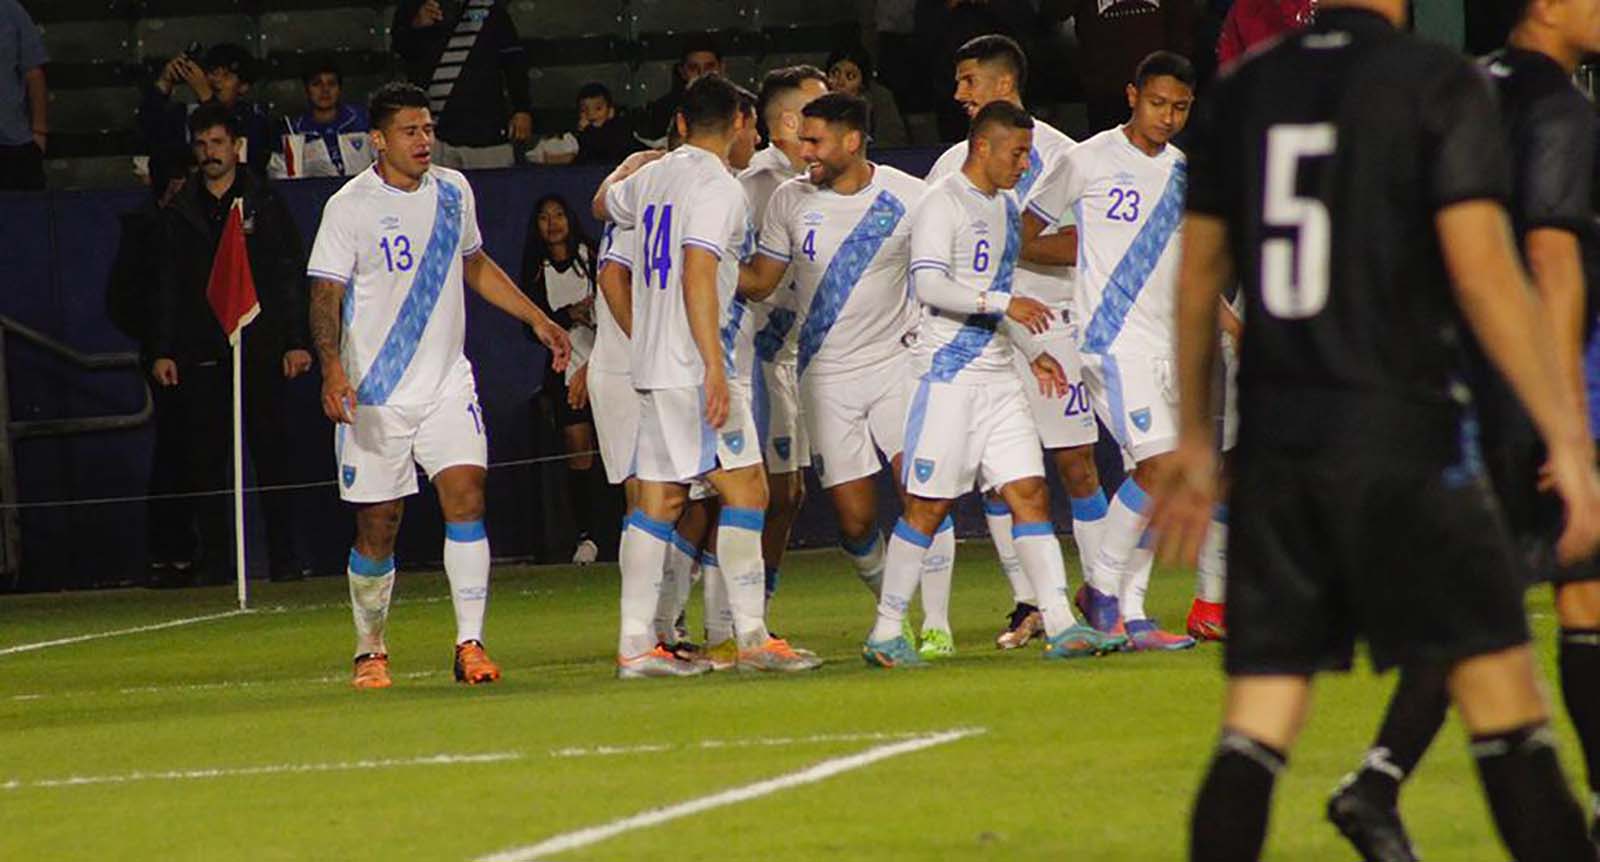 La selección de fútbol guatemalteca venció por marcador 3-1 a Nicaragua en partido amistoso disputado en el Dignity Health Sports Park en el estado de California